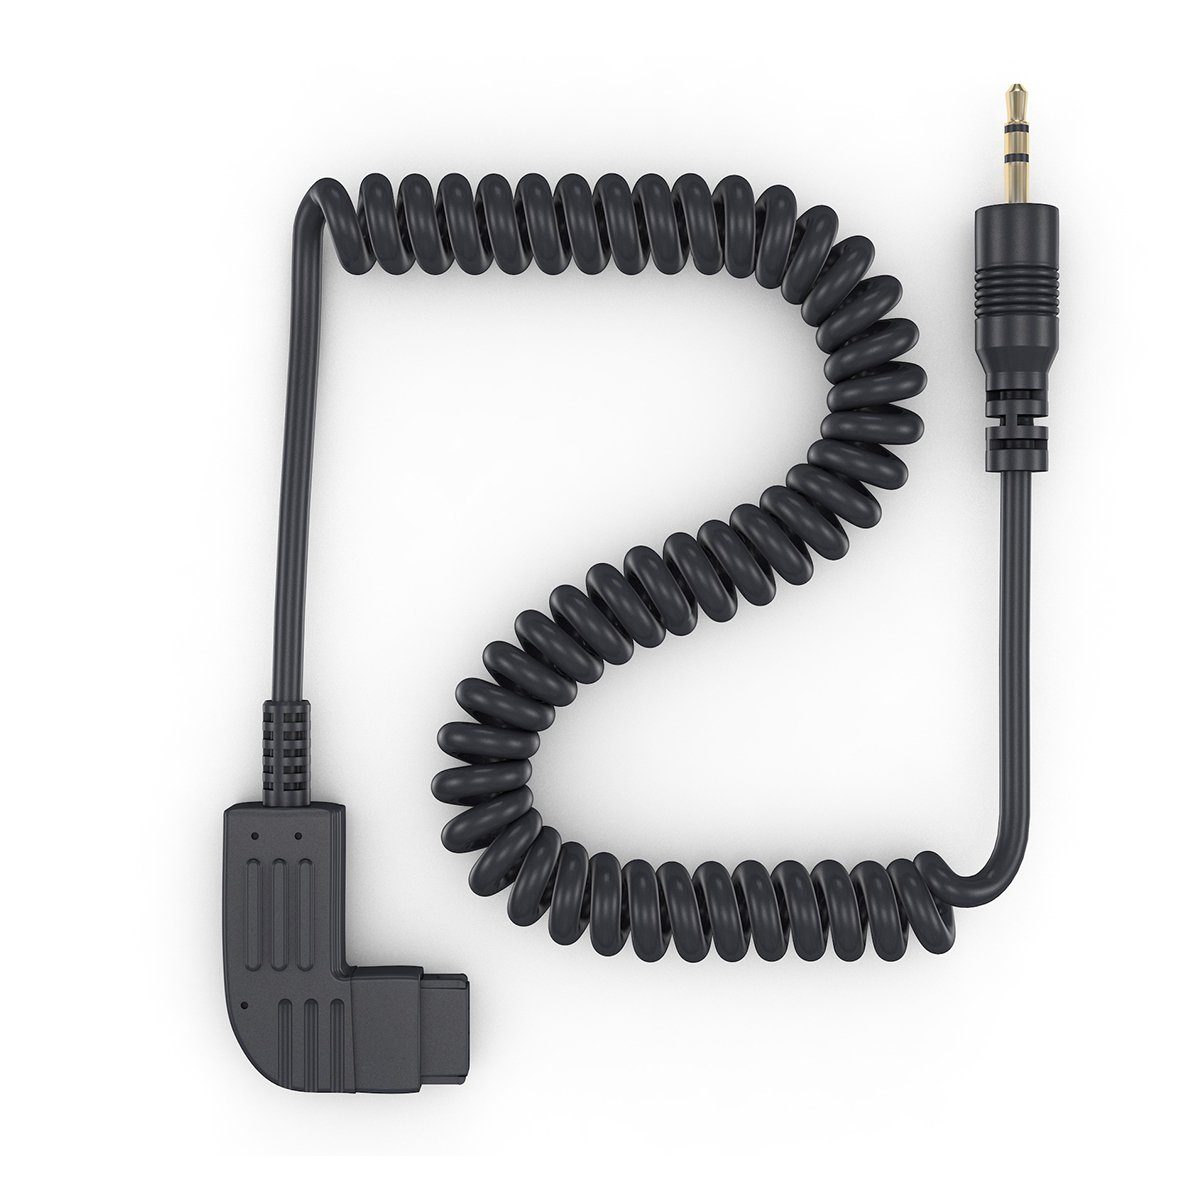 ayex Spiral Adapterkabel Sony Konica Minolta S1 z.B. für Fernauslöser Kabel-Fernauslöser